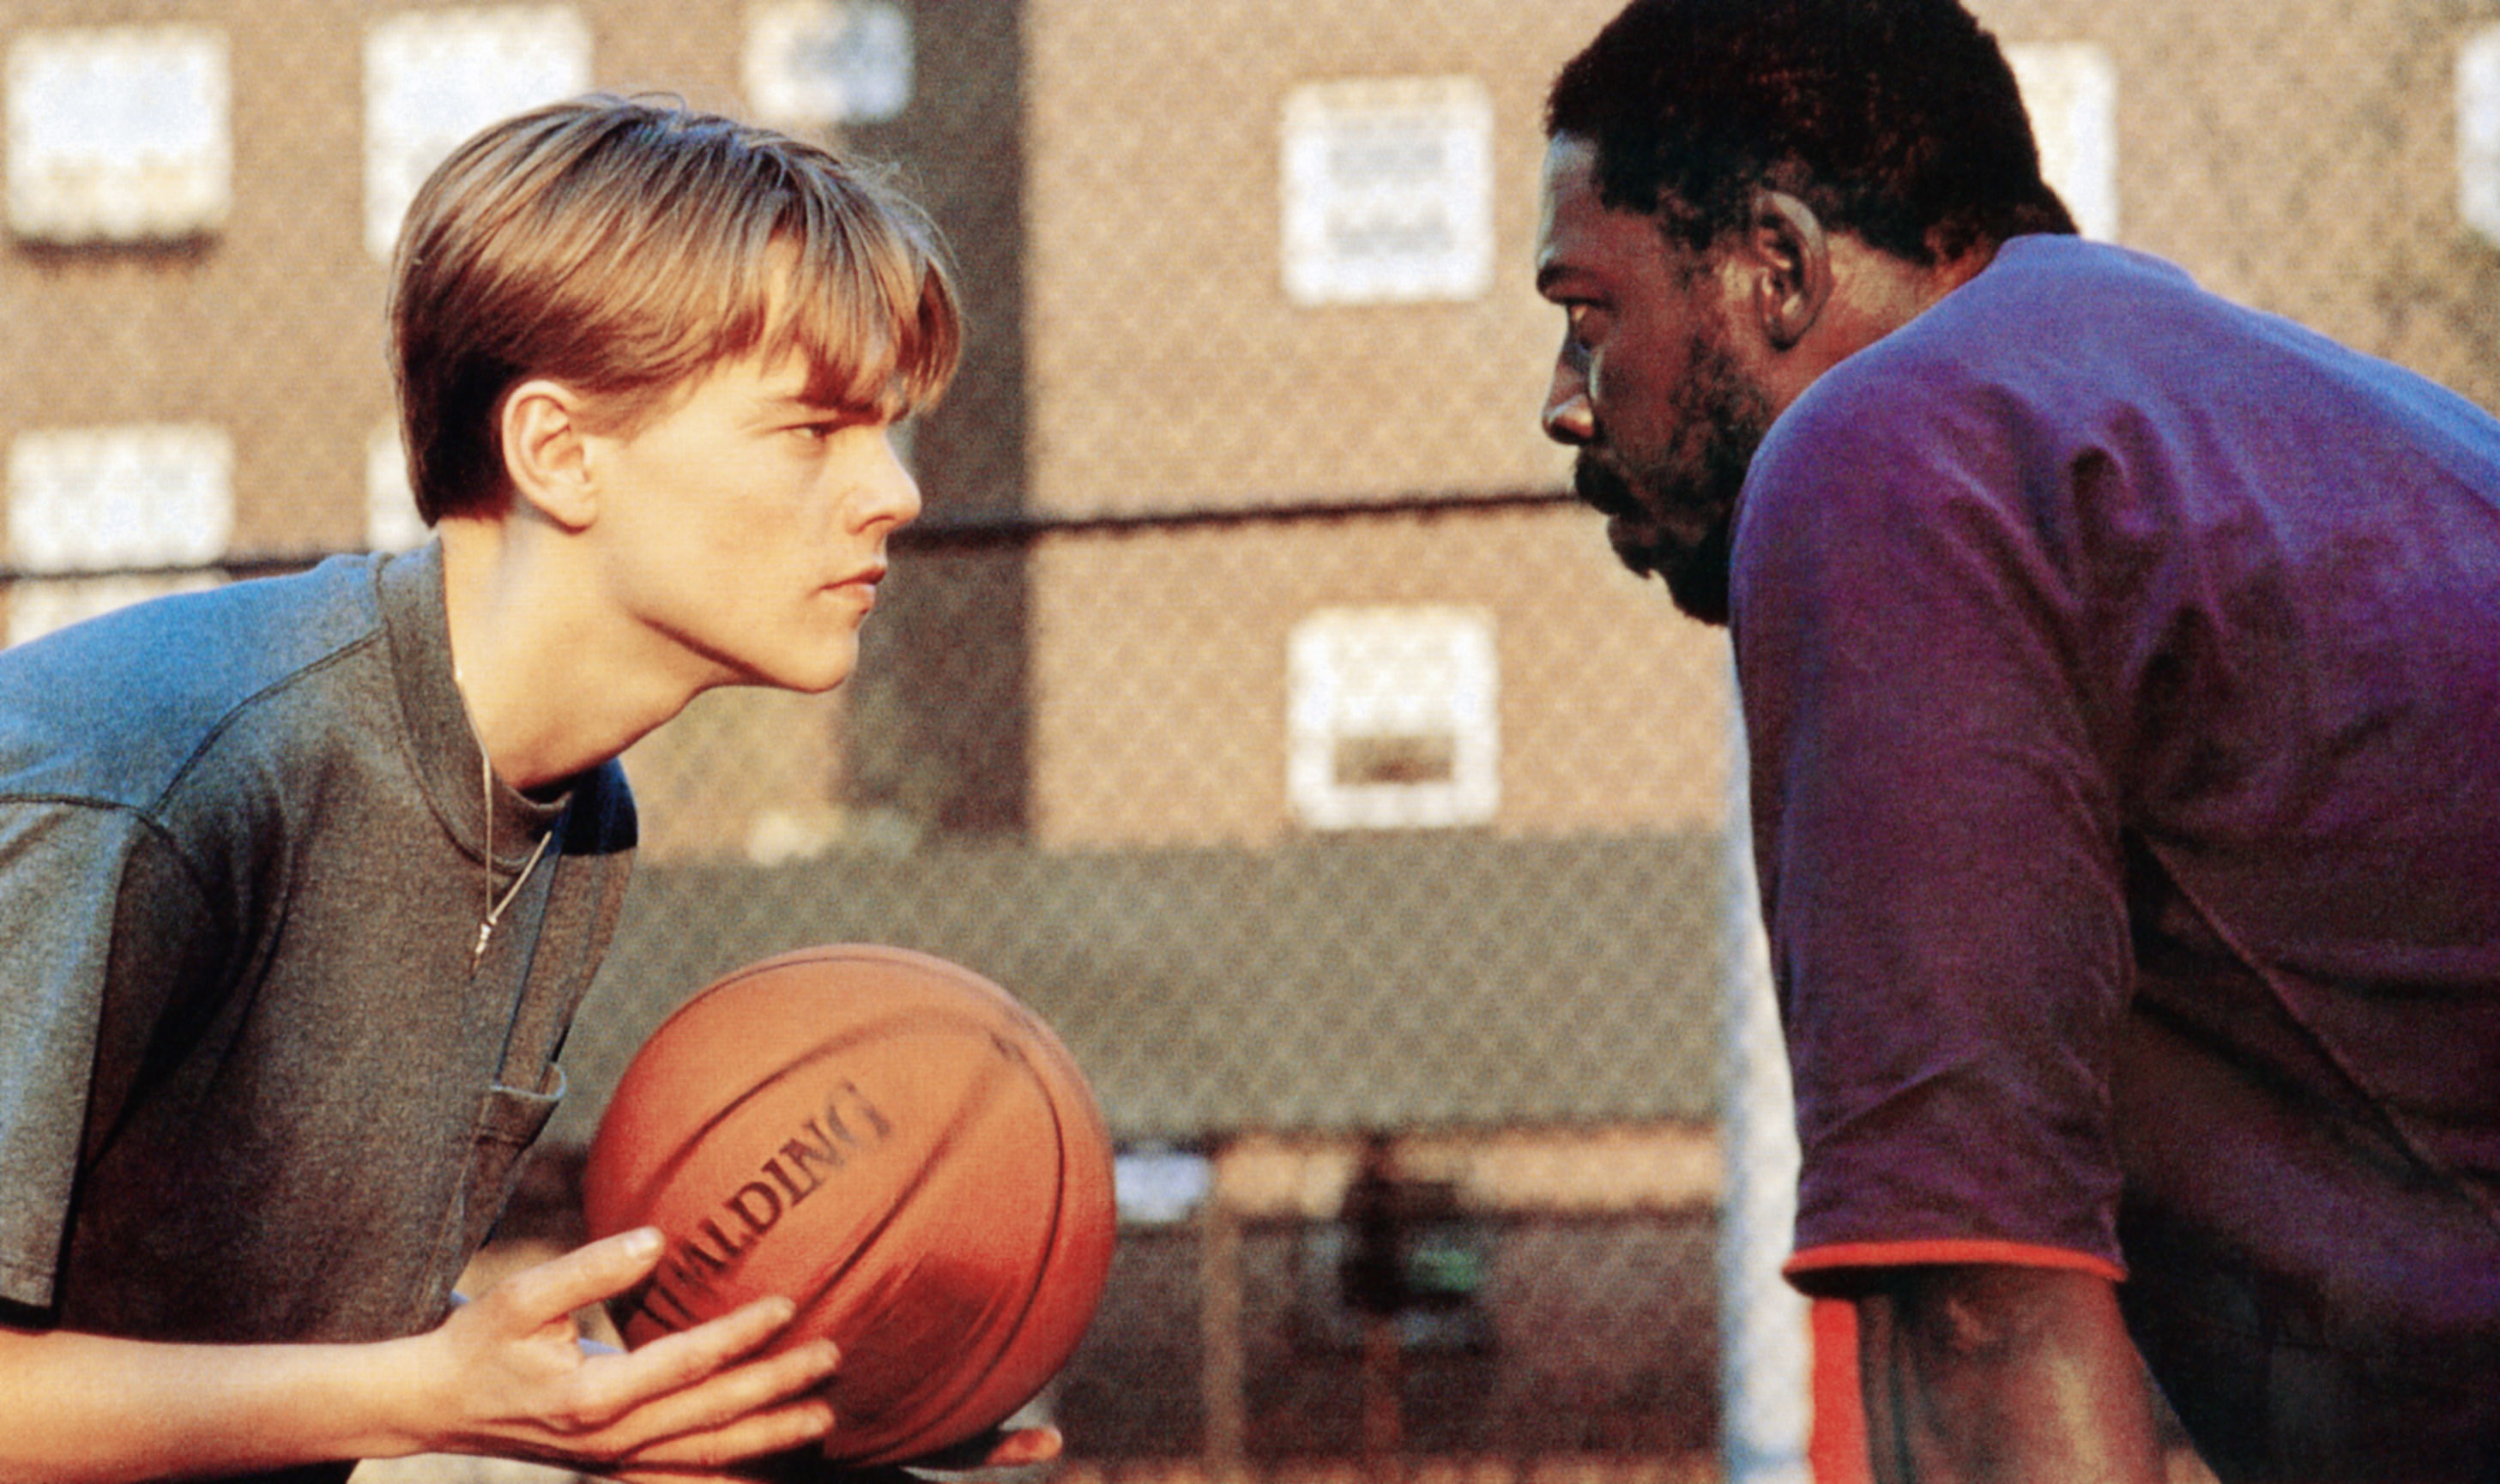 Leonardo DiCaprio plays basketball with Ernie Hudson